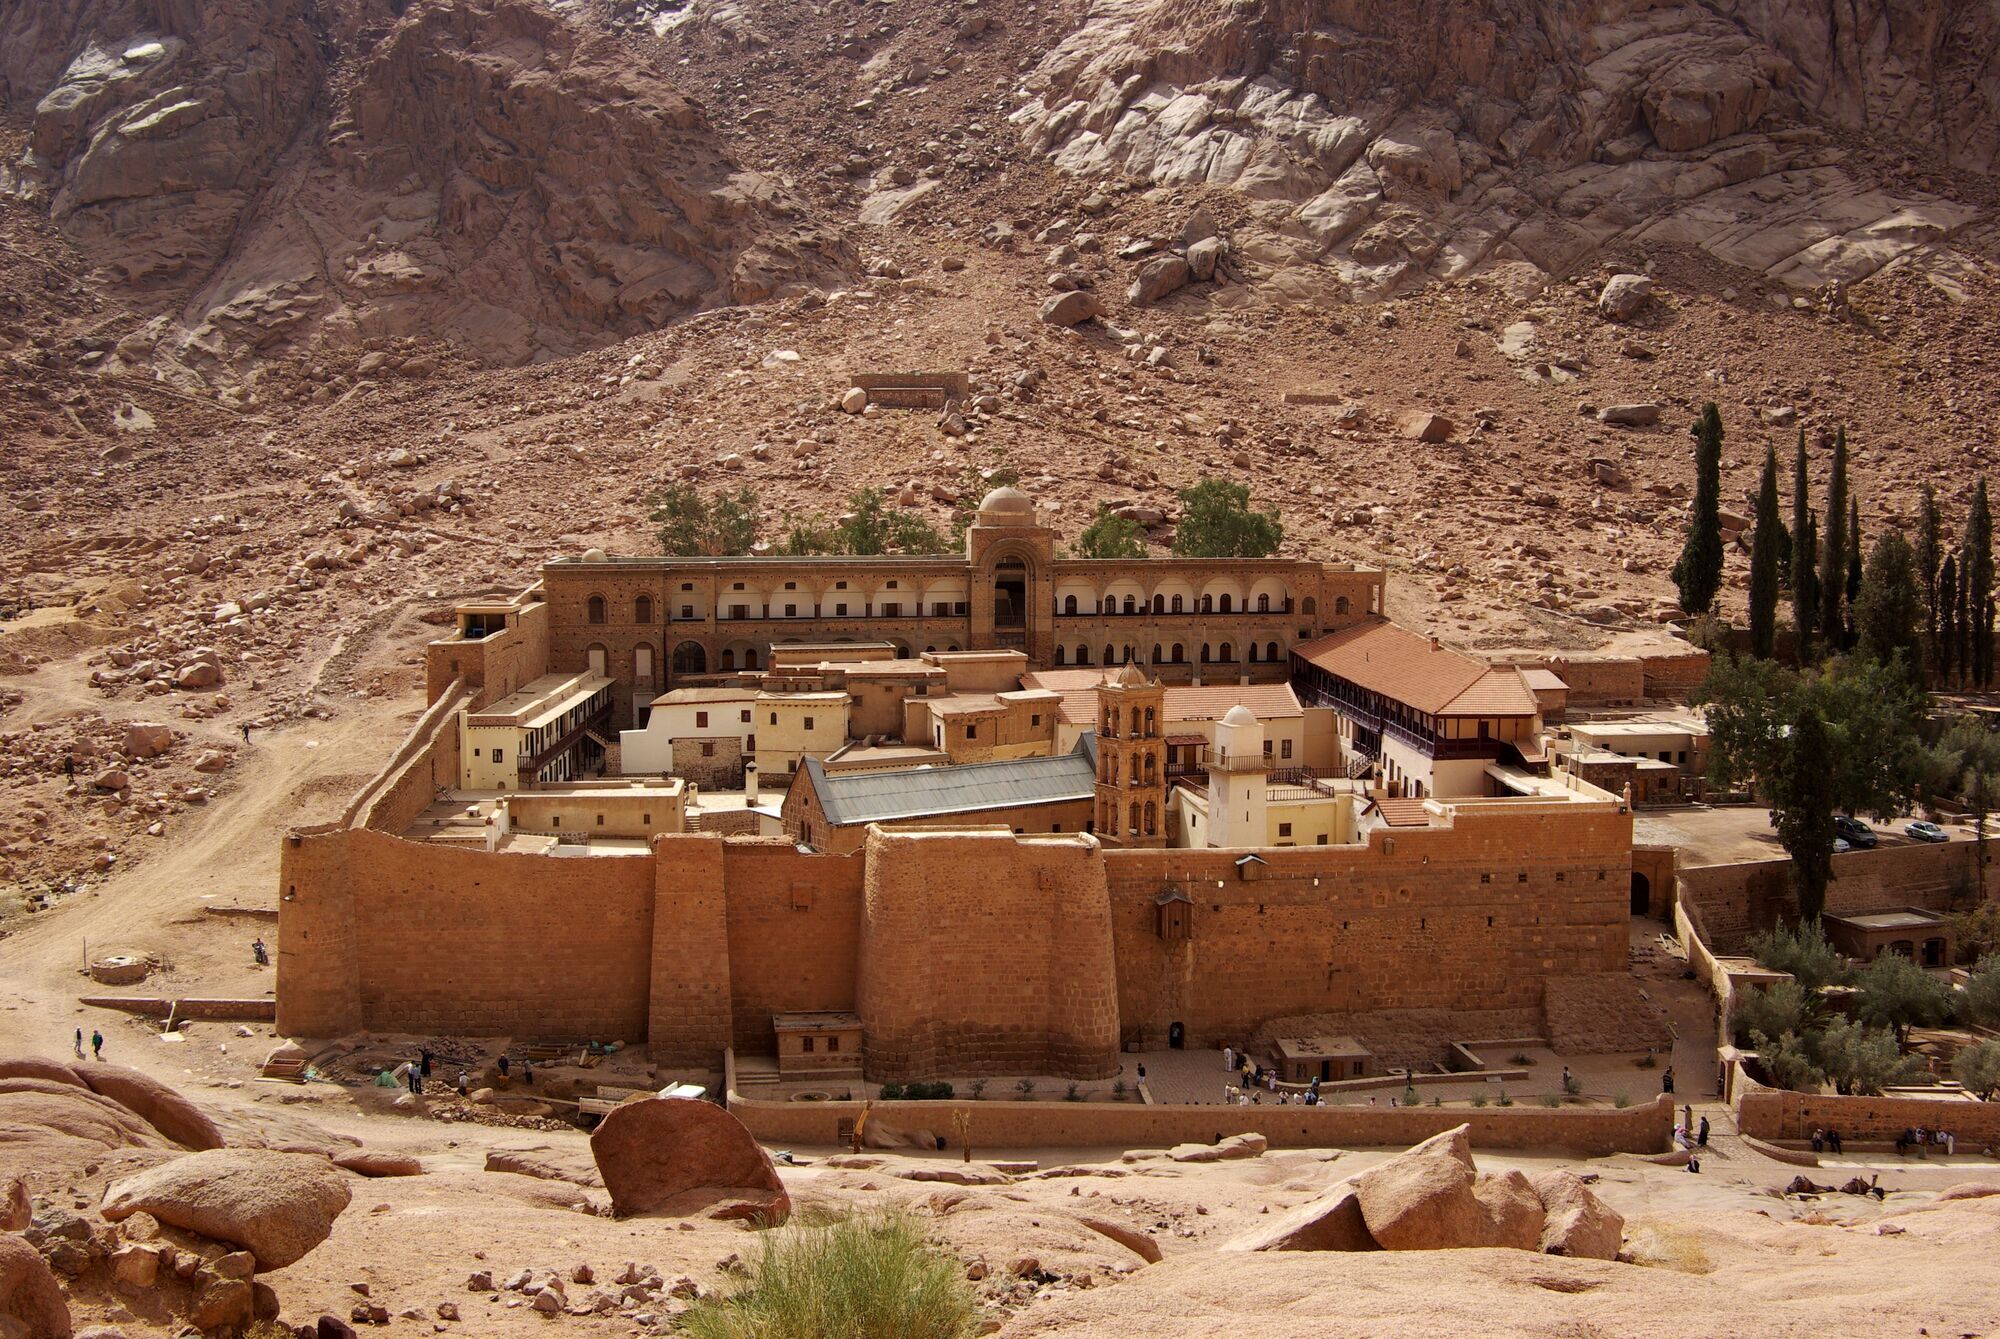 Монастырь святой Екатерины и гора Моисея находится в туристическом городке Шарм-эль-Шейх